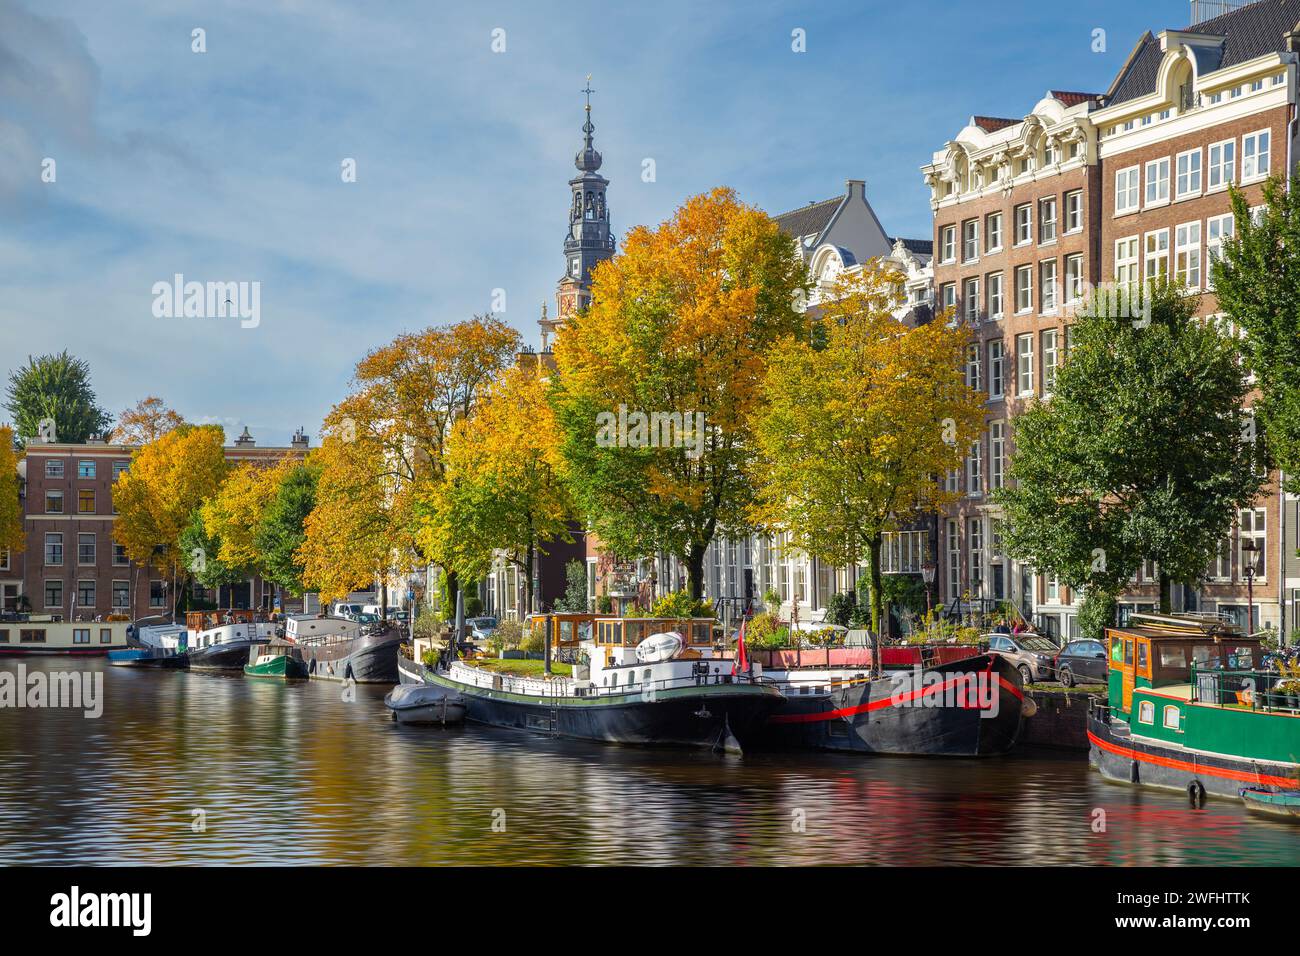 Canal de Ámsterdam y casa flotante / casa adosada con árboles coloridos de otoño, Amsterdam Foto de stock